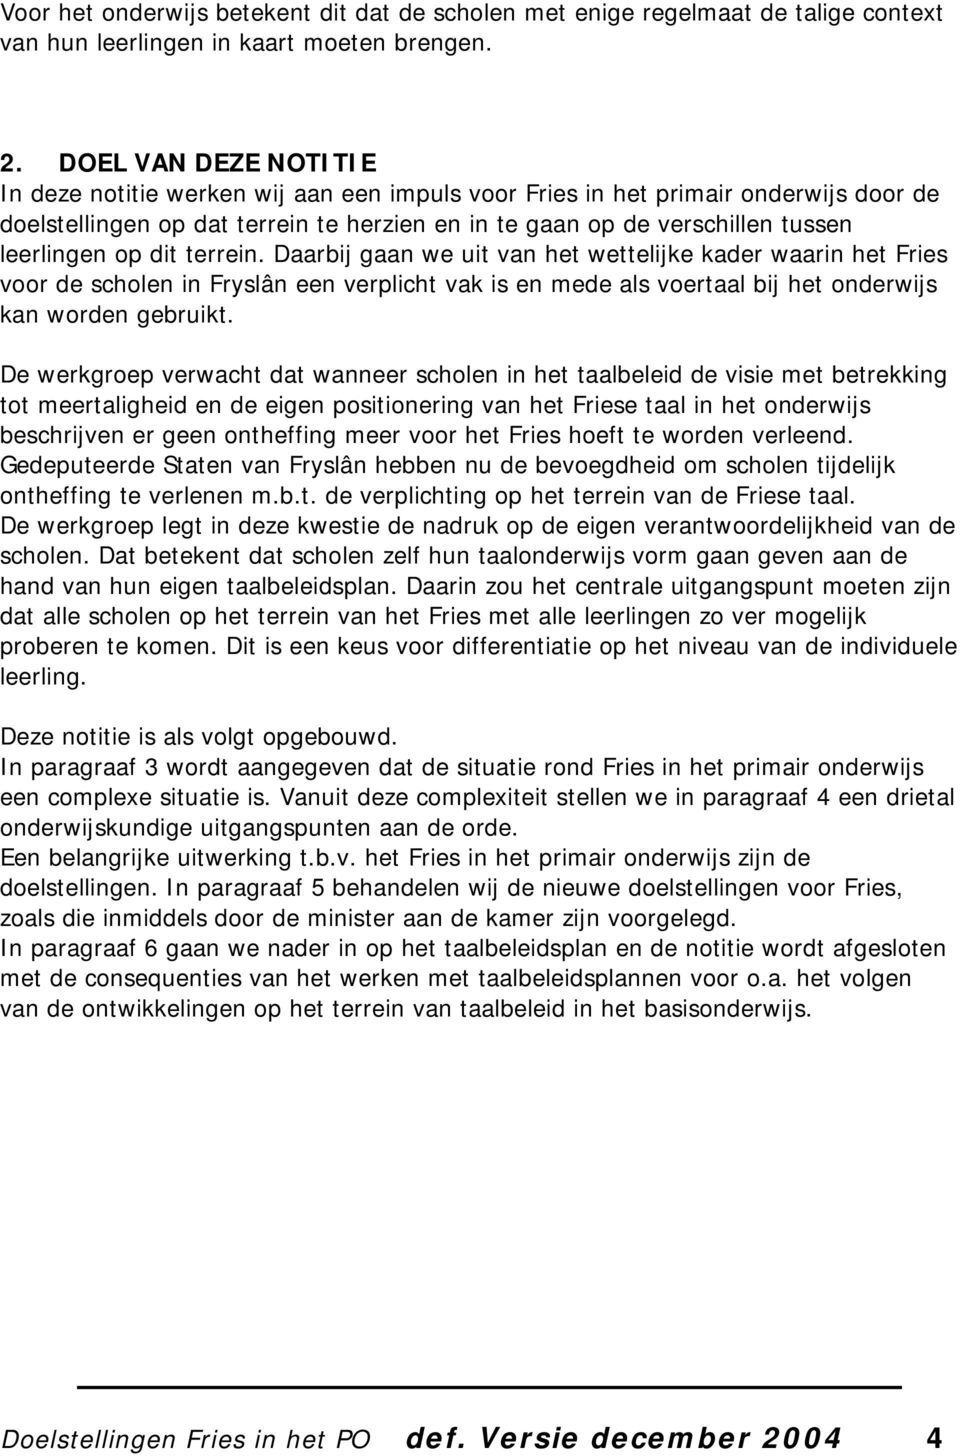 op dit terrein. Daarbij gaan we uit van het wettelijke kader waarin het Fries voor de scholen in Fryslân een verplicht vak is en mede als voertaal bij het onderwijs kan worden gebruikt.